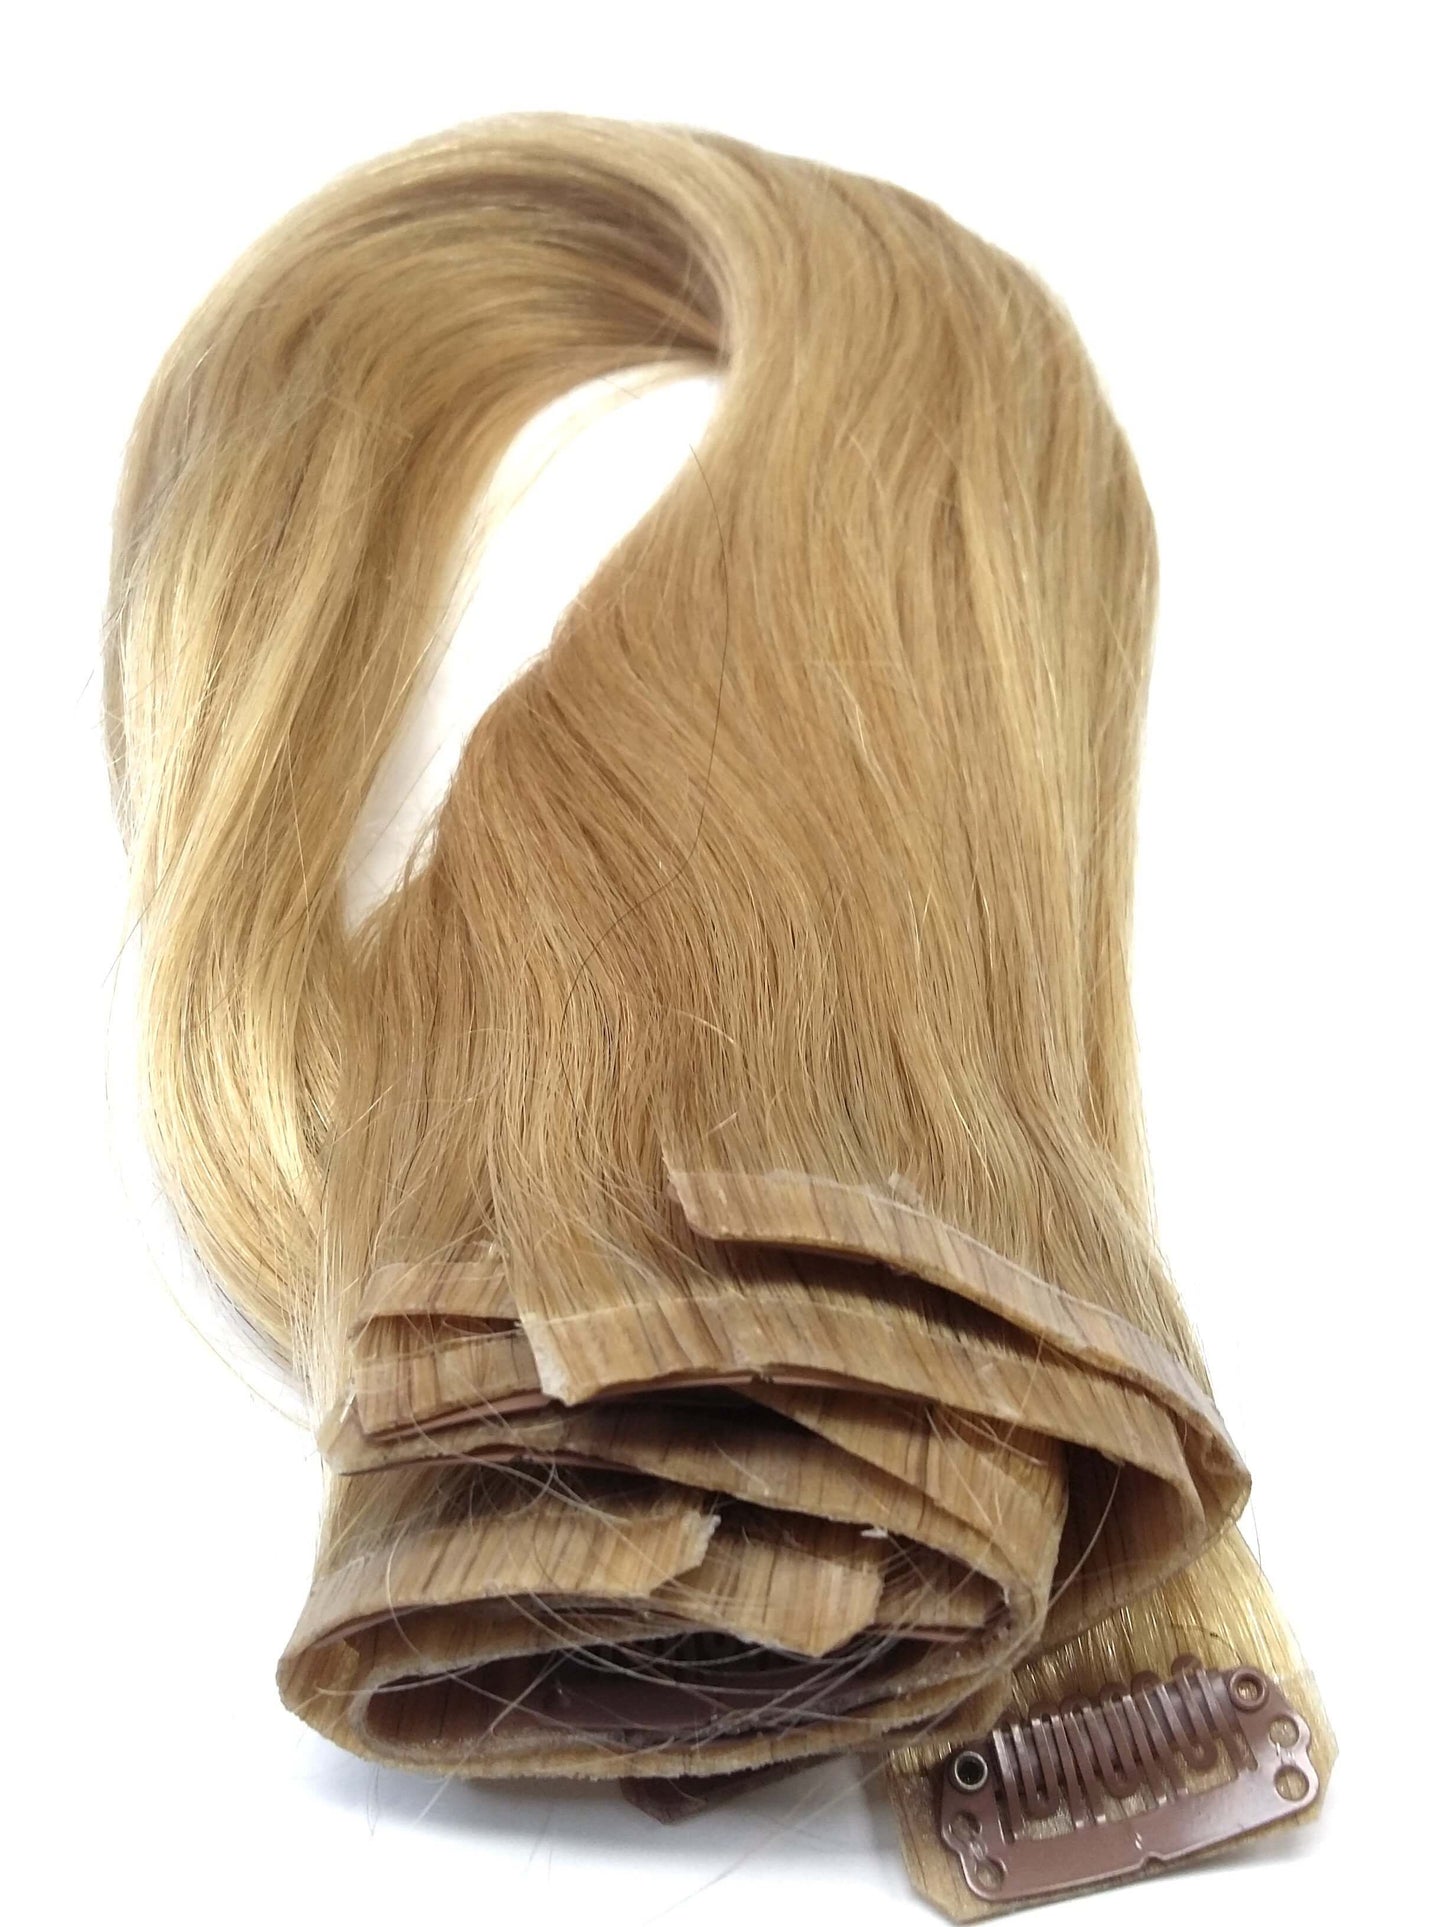 שיער אנושי רמי בתולה ברזילאי - קליפס pu בתוספות, 20'', ישר, צבע 24,100 גרם - משלוח מהיר